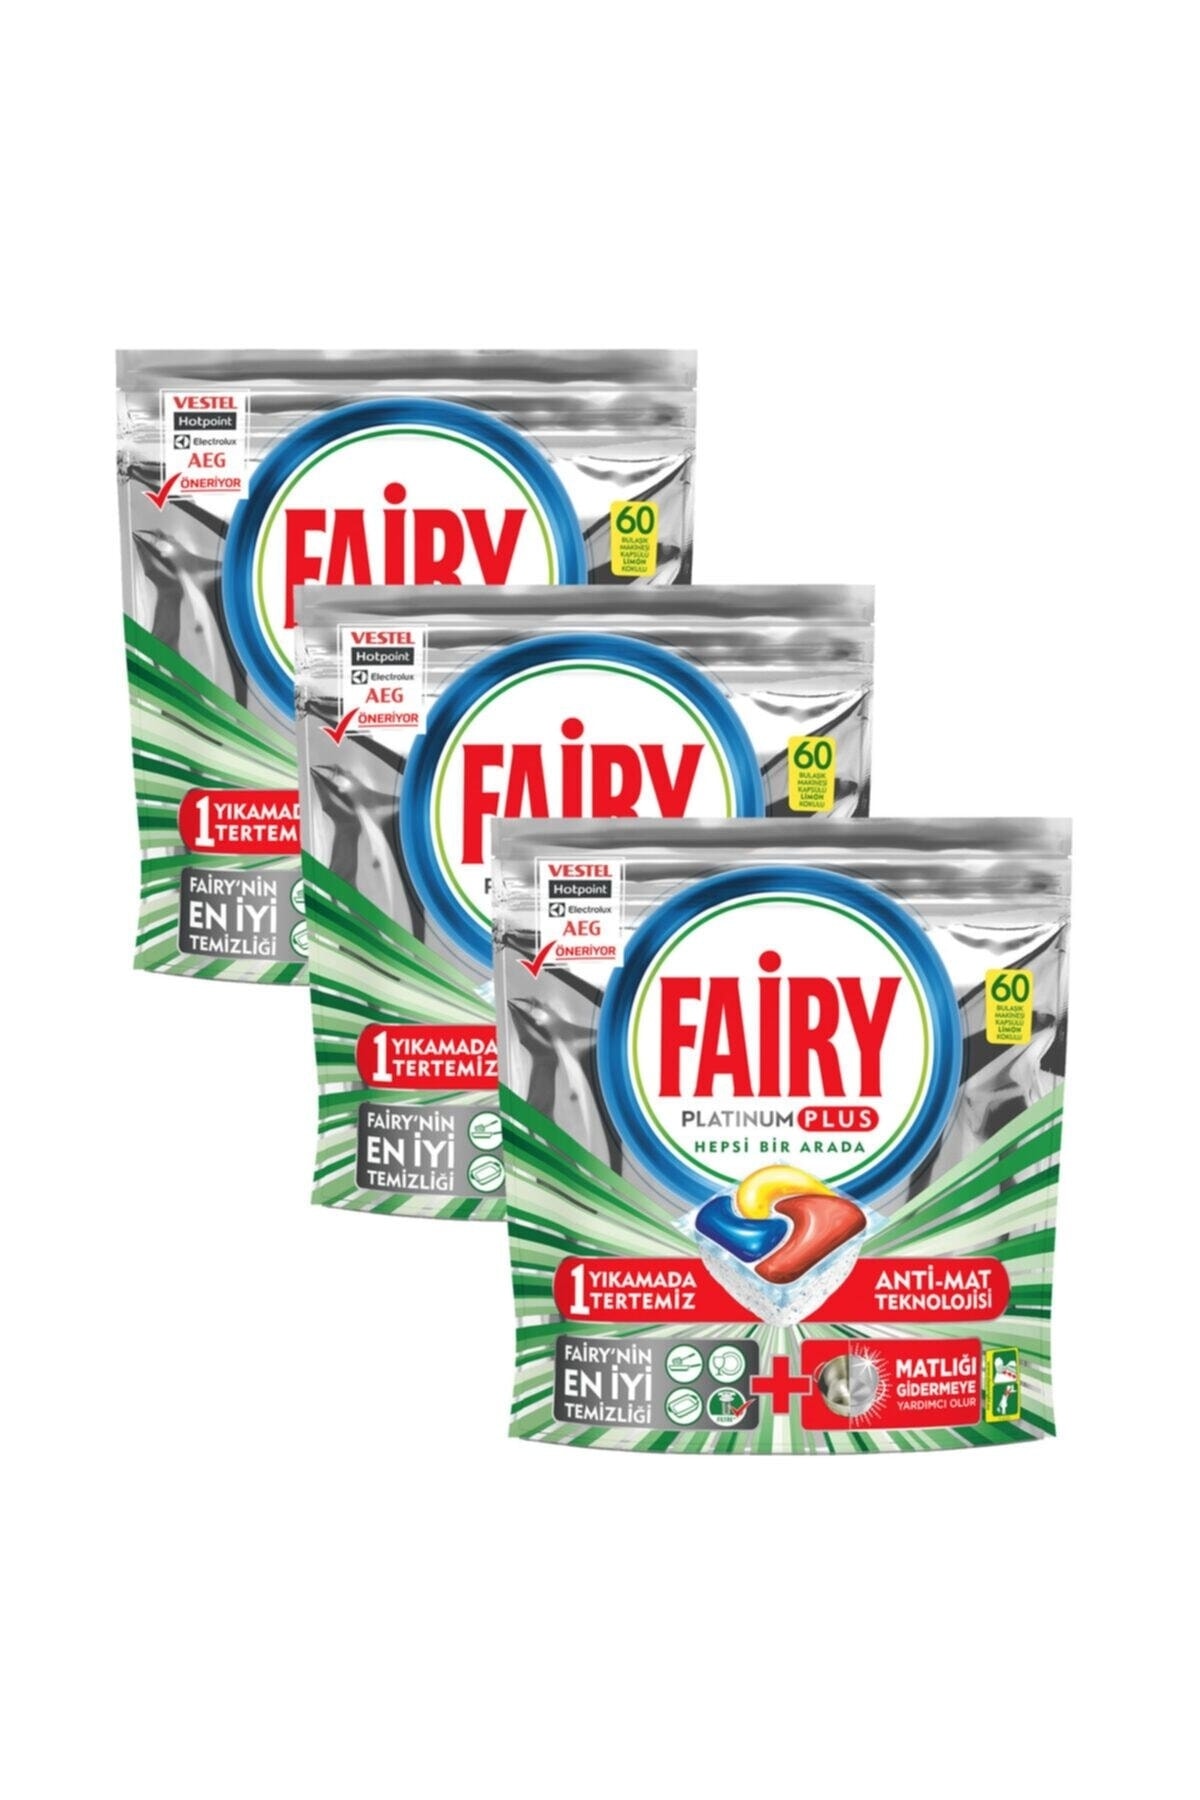 Fairy Platınum Plus Hepsi Bir Arada Bulaşık Makinesi Deterjanı Kapsülü 60 lı 3 Paket 180 Yıkama